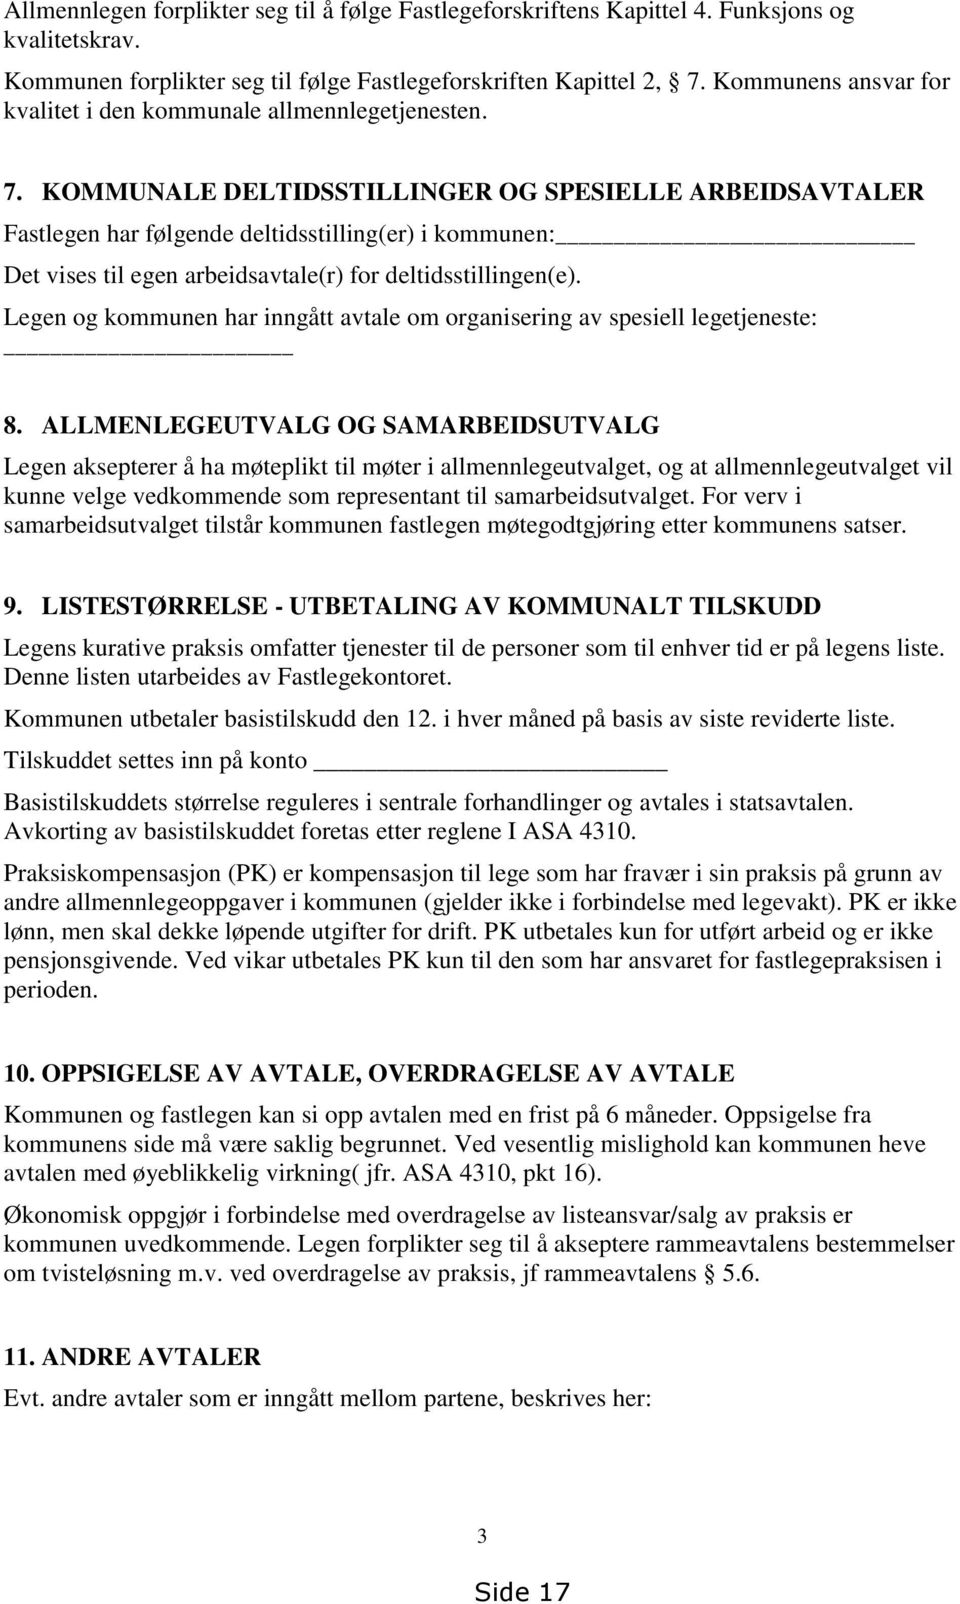 KOMMUNALE DELTIDSSTILLINGER OG SPESIELLE ARBEIDSAVTALER Fastlegen har følgende deltidsstilling(er) i kommunen: Det vises til egen arbeidsavtale(r) for deltidsstillingen(e).